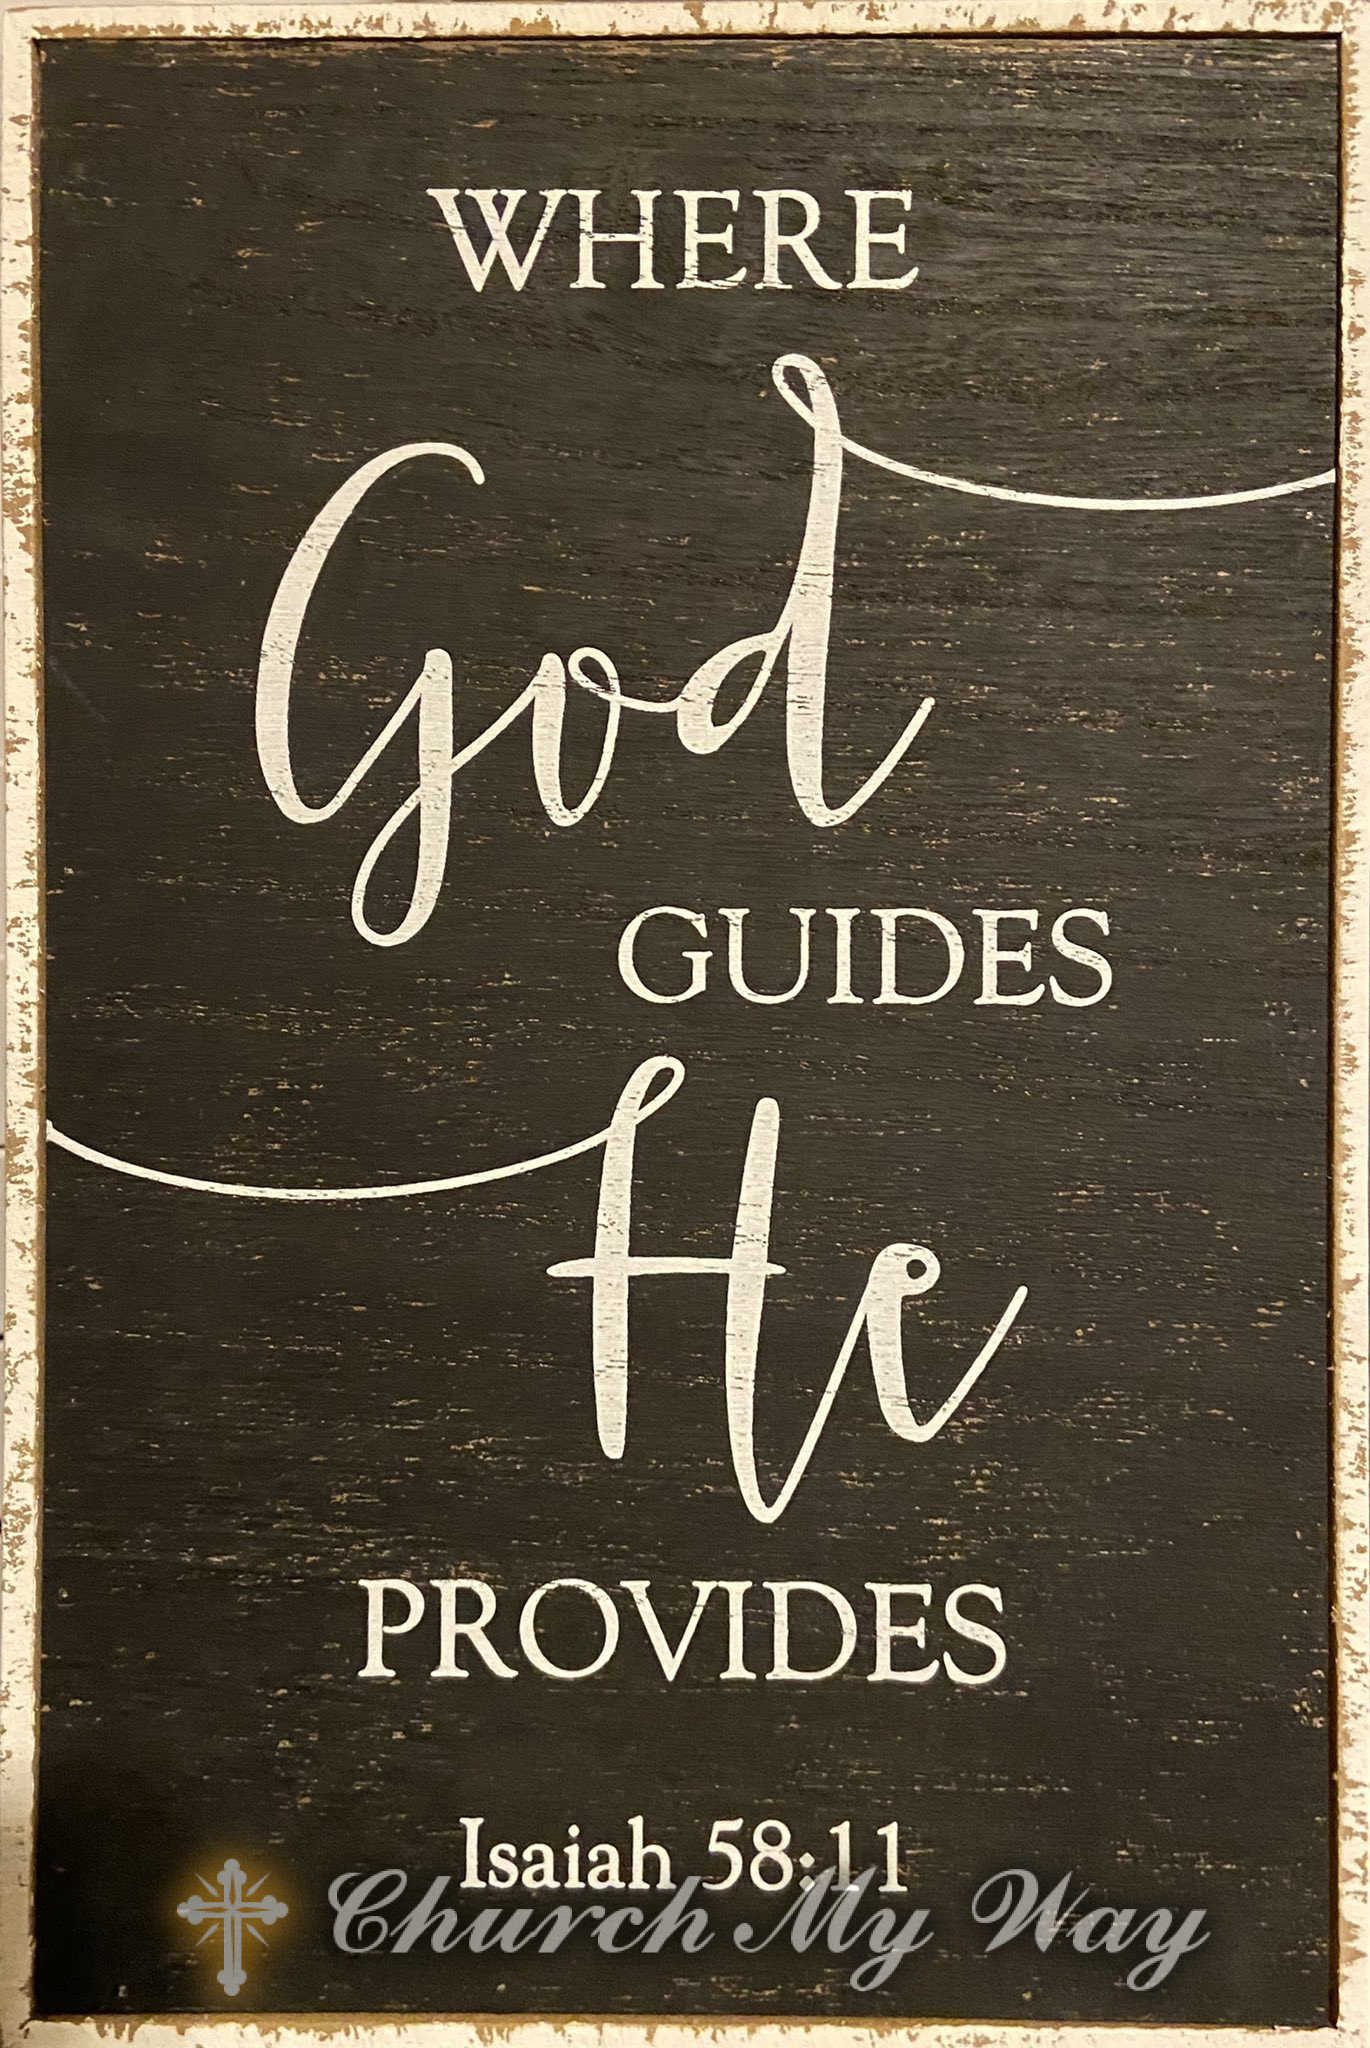 God guides